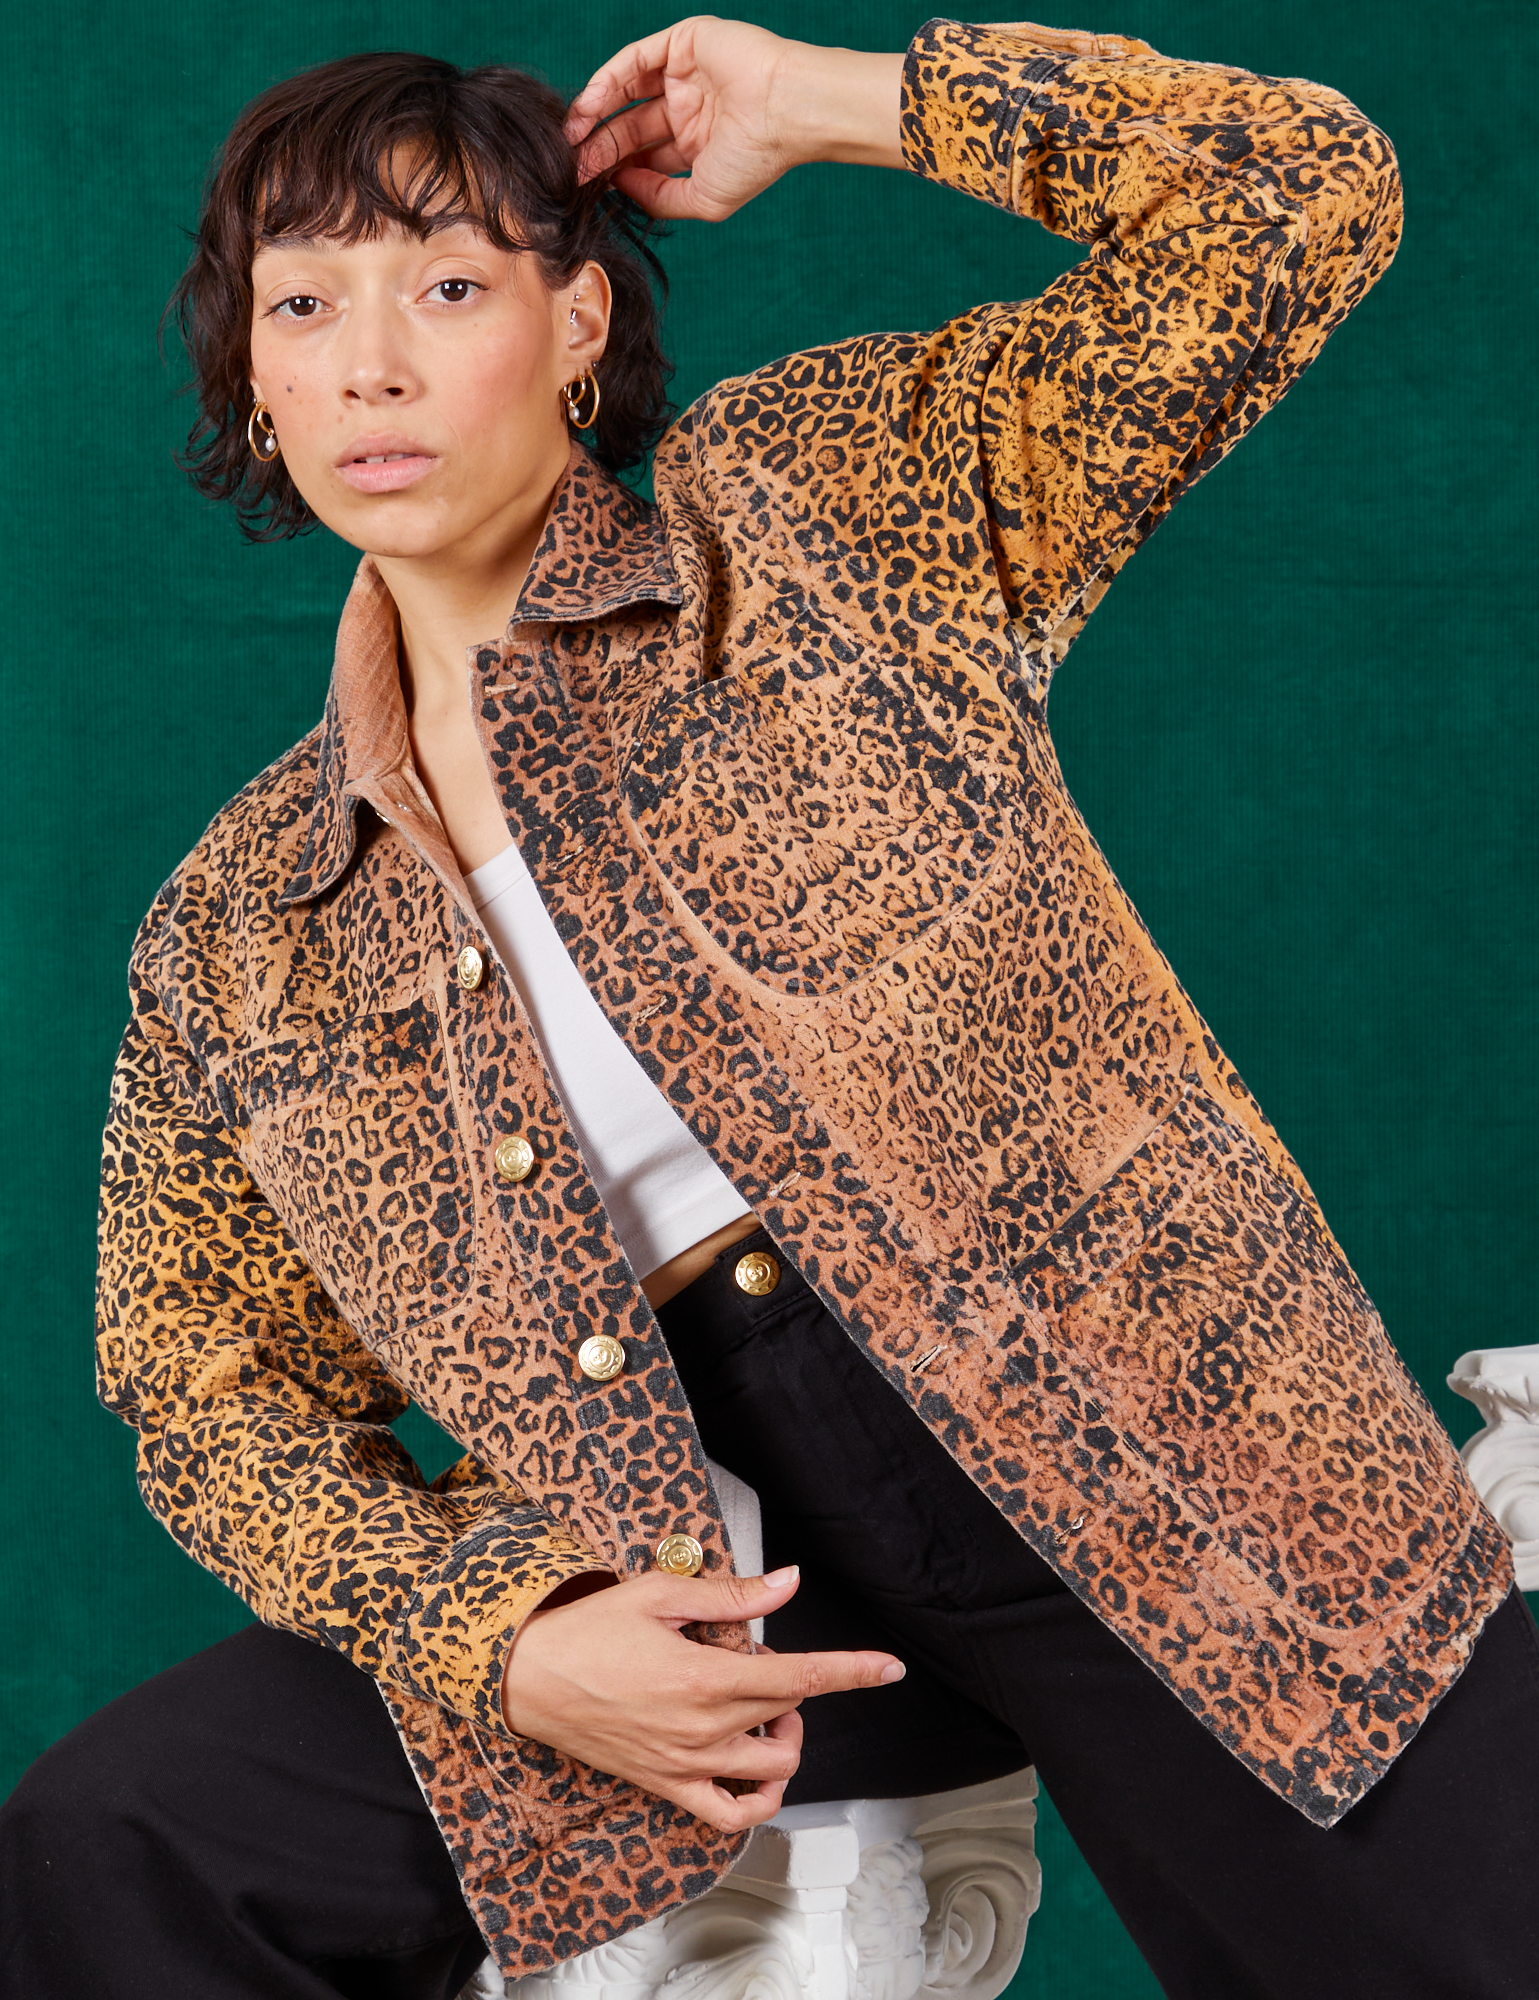 Tiara is wearing Field Coat in Leopard Print